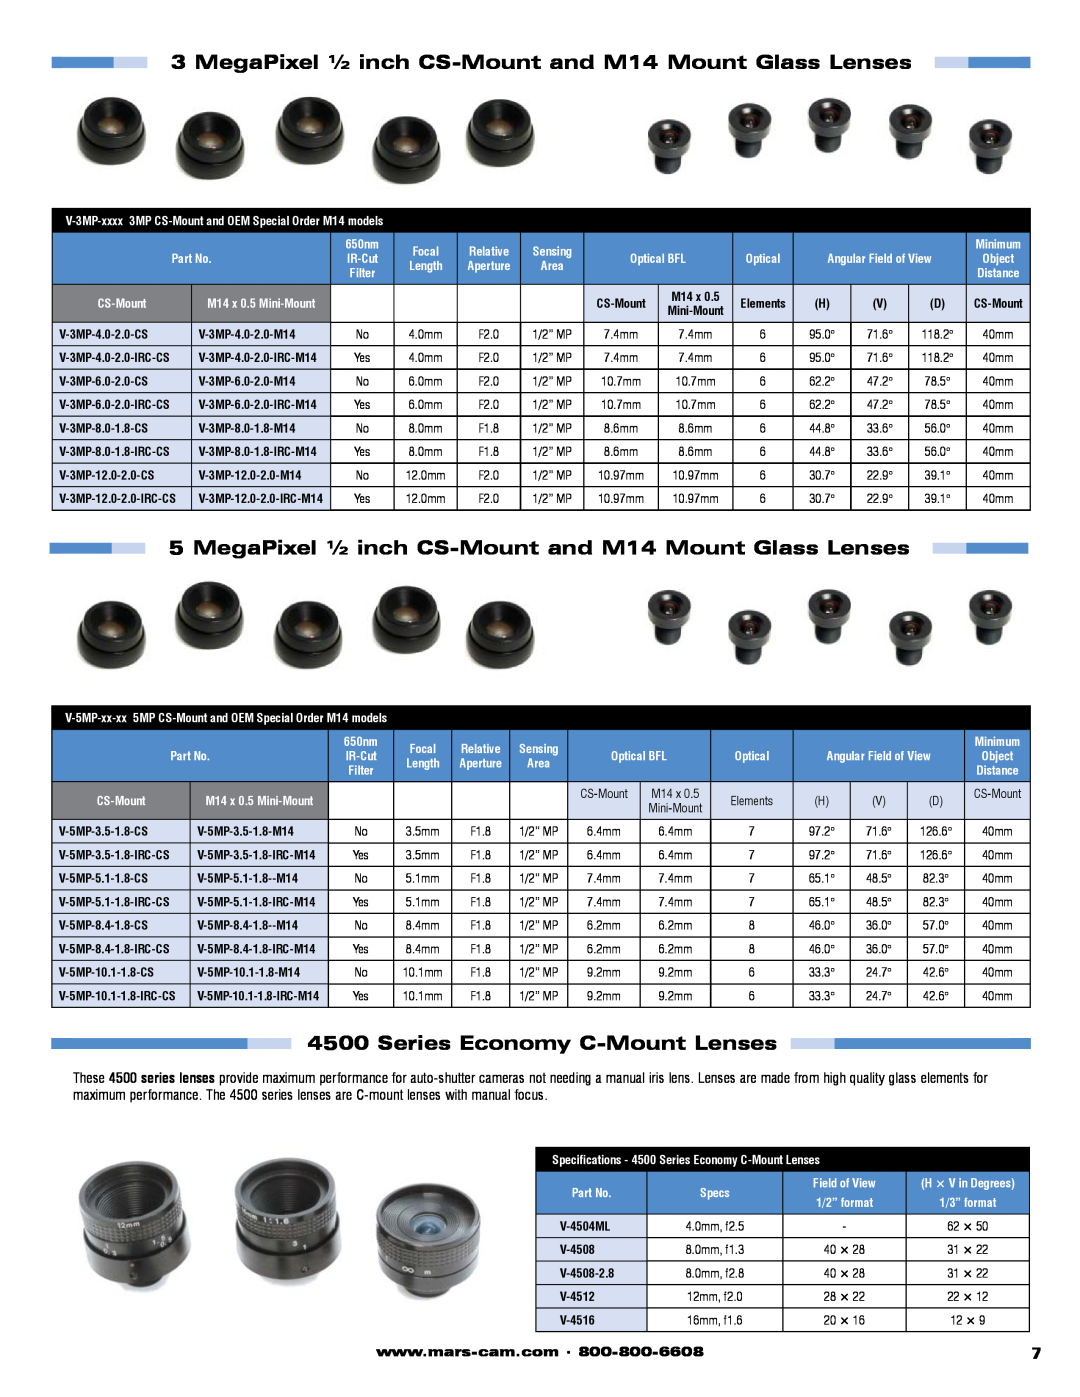 Marshall electronic V-ZPL06, V-ZPL-318 MegaPixel ½ inch CS-Mount and M14 Mount Glass Lenses, Series Economy C-Mount Lenses 